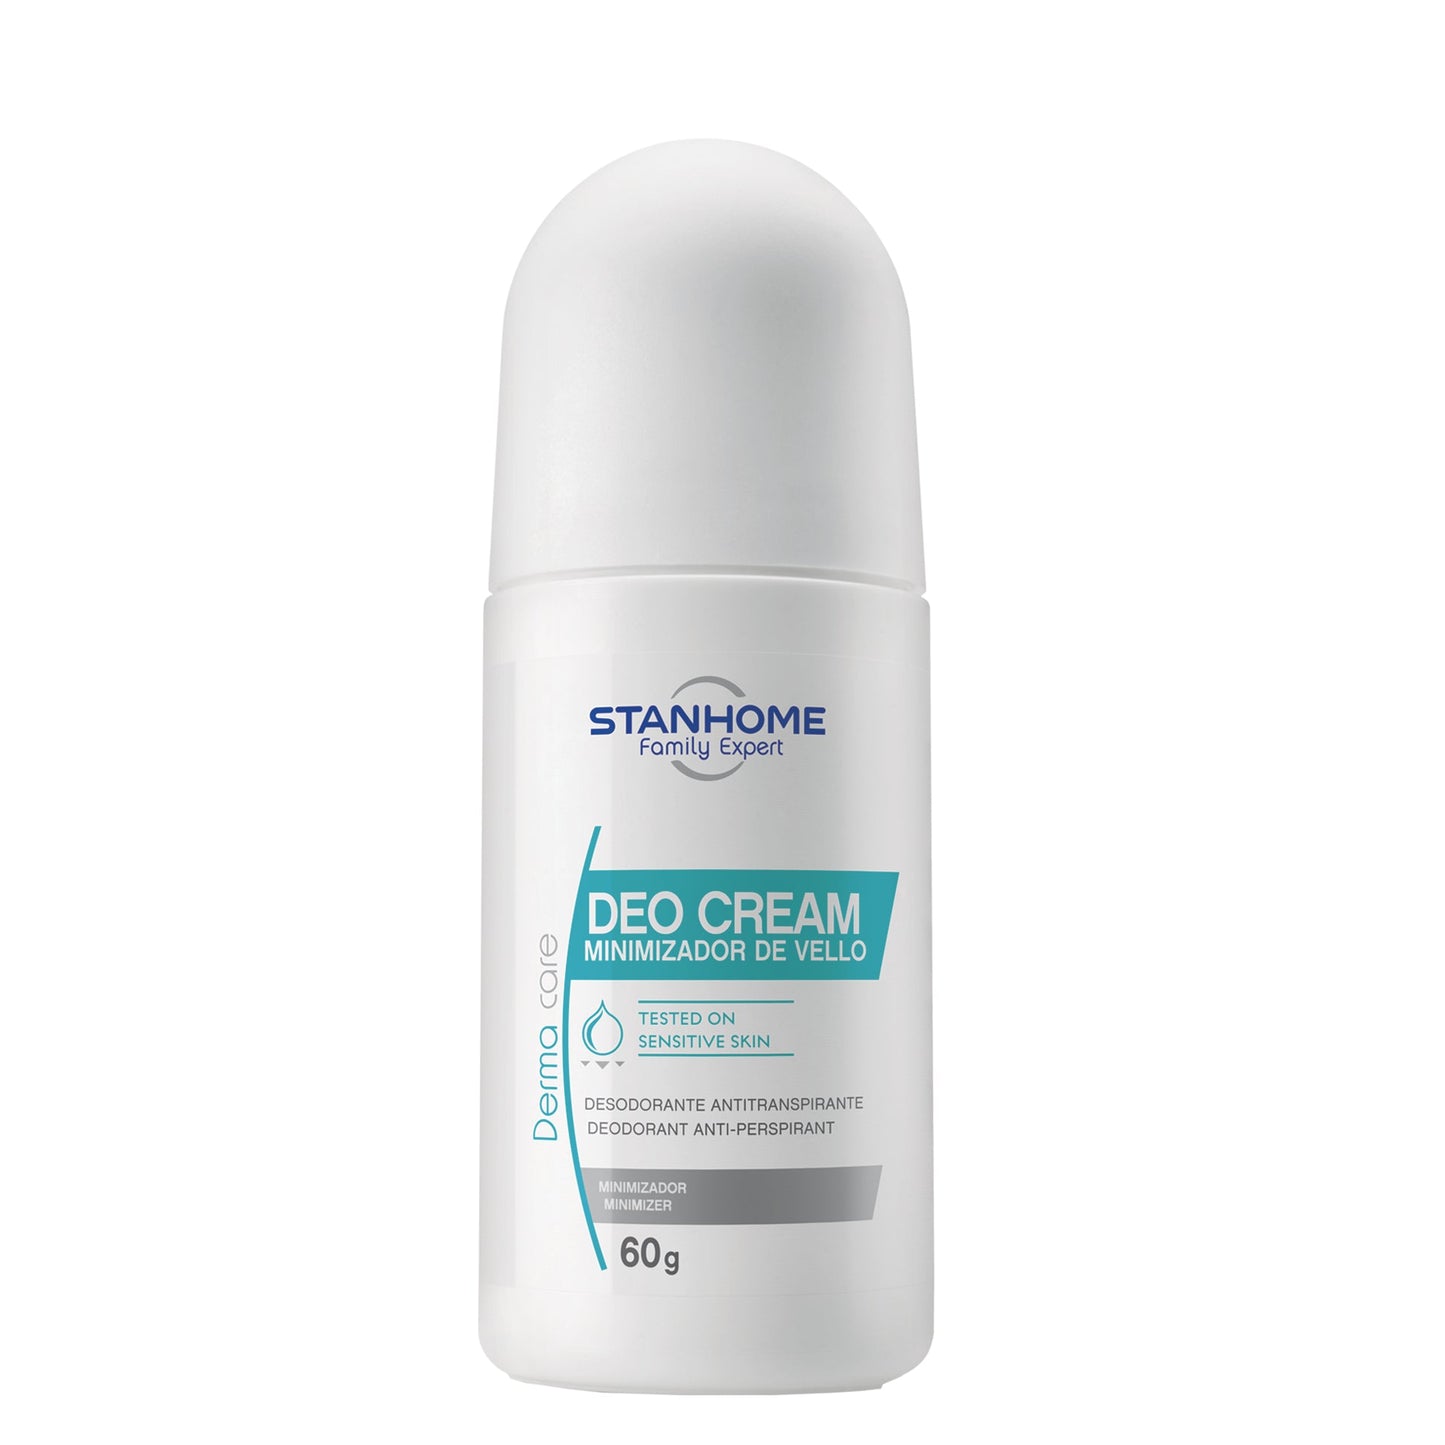 Deo Cream | Desodorante antitranspirante sin alcohol